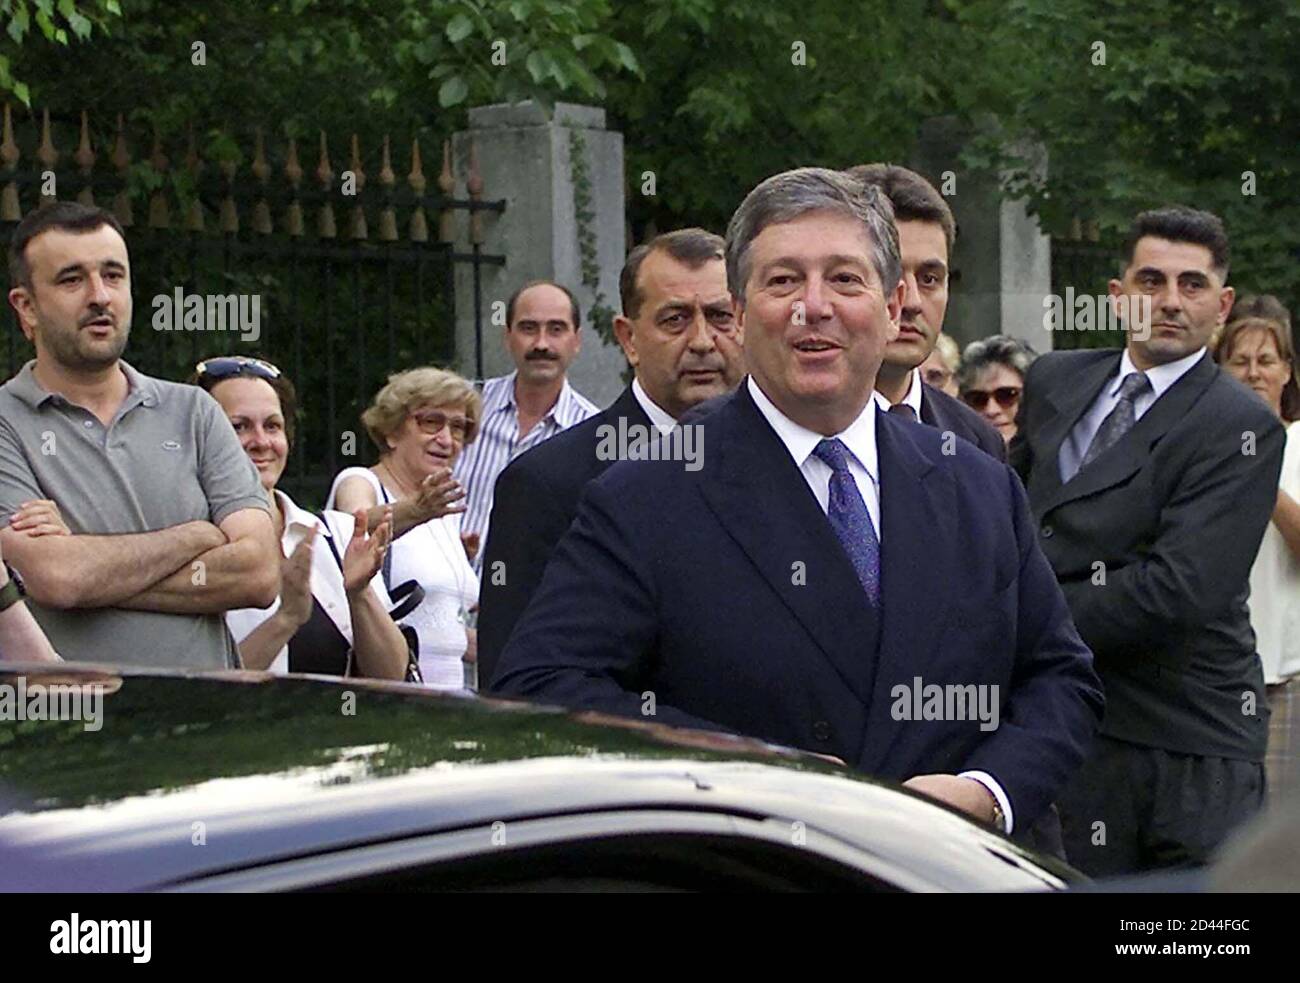 ALEXANDER KARADJORDJEVIC, HIJO DEL ÚLTIMO REY DE YUGOSLAVIA, SONRÍE CUANDO LLEGA FRENTE A LOS ANTIGUOS PALACIOS REALES DE BELGRADO. Alexander Karadjordjevic (C), hijo del último rey de Yugoslavia, Pedro II, sonríe cuando llega frente a dos antiguos palacios reales en Belgrado 17 de julio de 2001.el gobierno yugoslavo permitió a la familia real Karadjordjevic volver a sus palacios ancestrales en la capital Belgrado, después de décadas de exilio. Nacido en Londres en 1945, Alexander es el hijo del último rey de Yugoslavia, Petar II, que huyó después de que la Alemania nazi sobrepasó el país en 1941. Visitó Belgrado Foto de stock